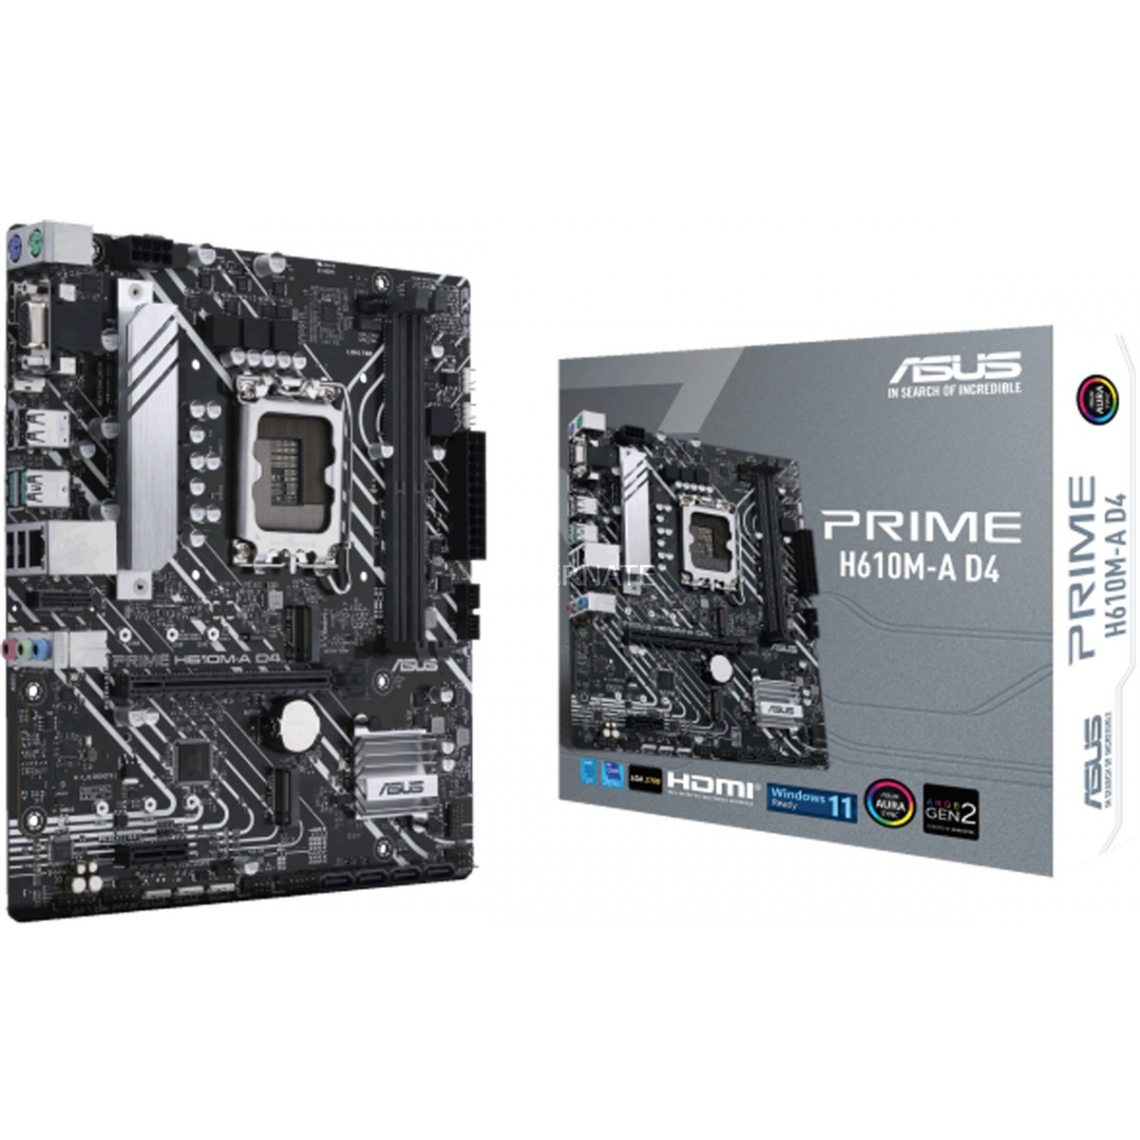 Asus - PRIME H610M-A D4-CSM - Carte mère Intel